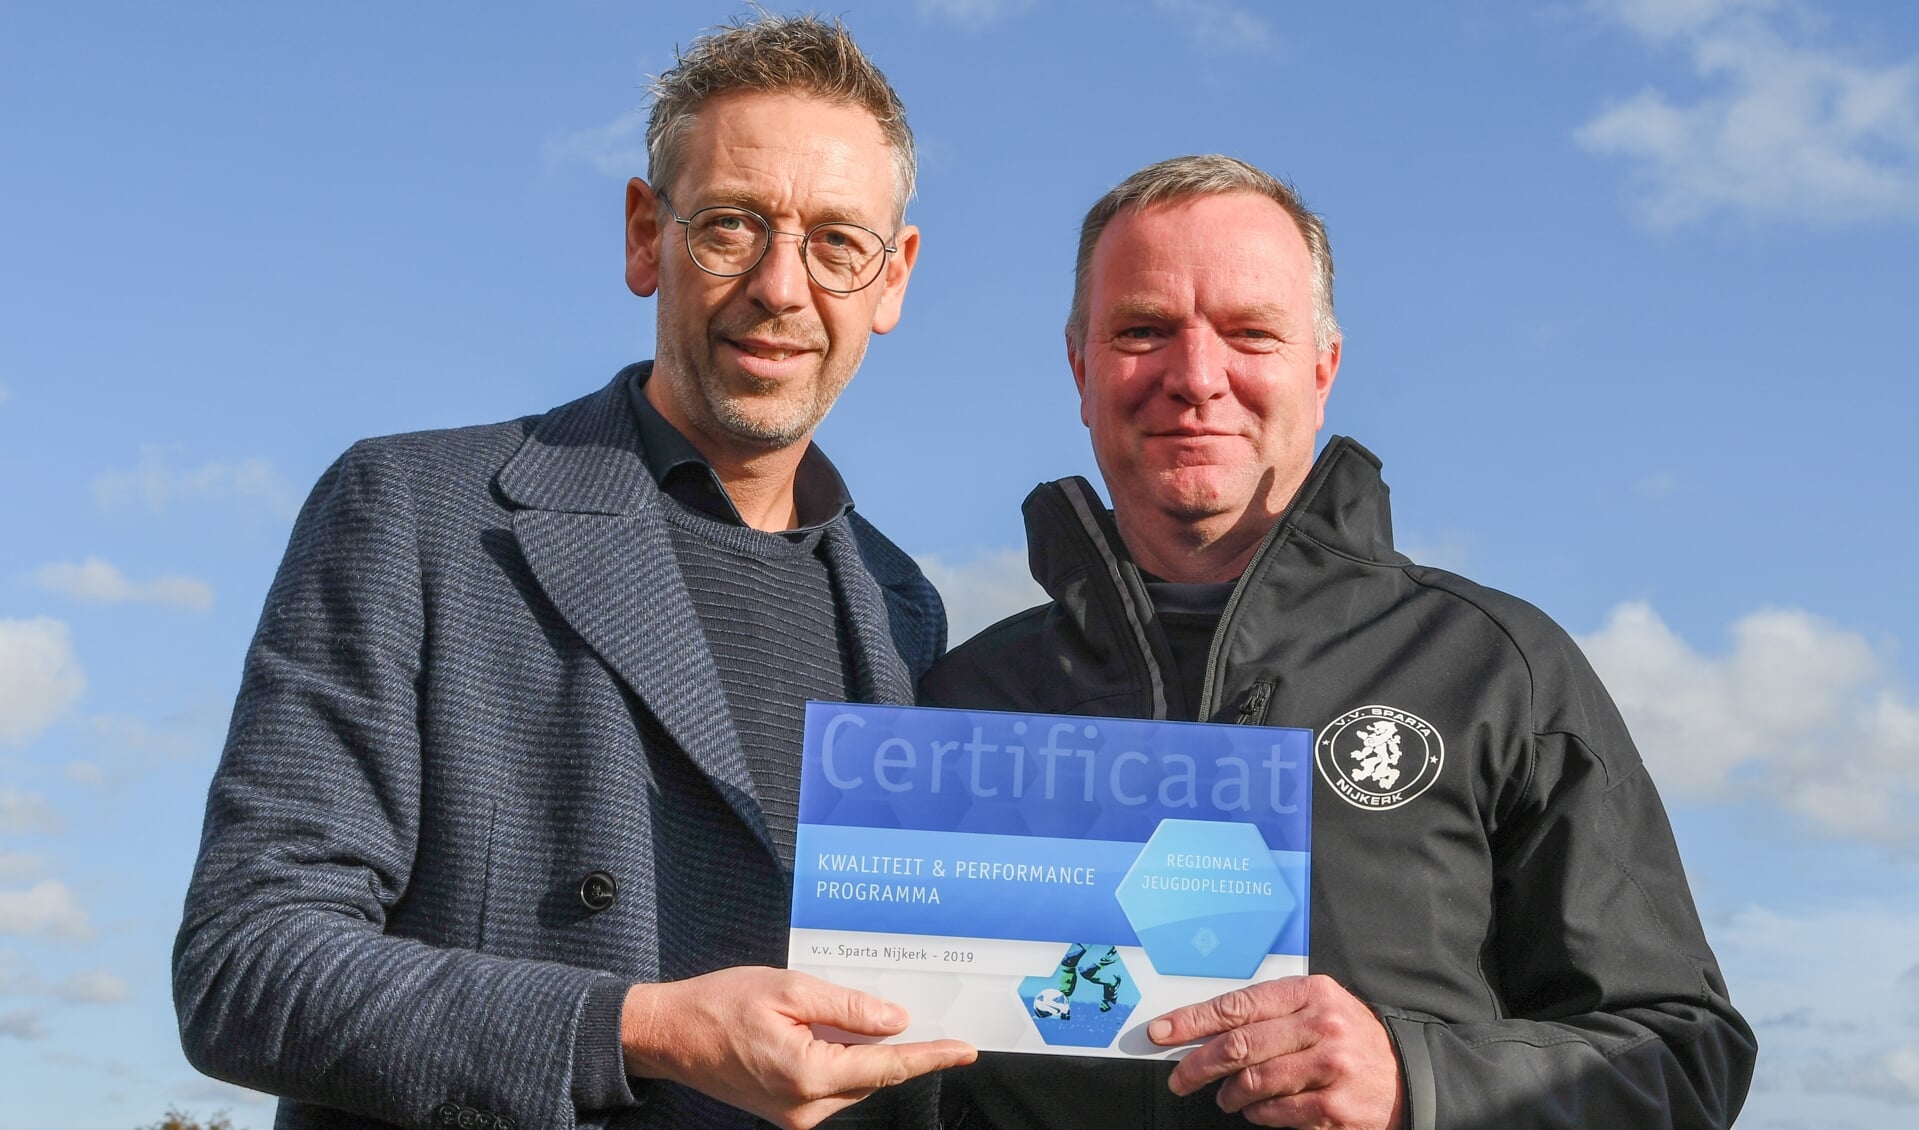 KNVB directeur Amateurvoetbal Jan Dirk van der Zee en Hoofd Jeugdopleiding v.v. Sparta Nijkerk Rob Schoon met de erkenning 'Regionale Jeugdopleiding'.